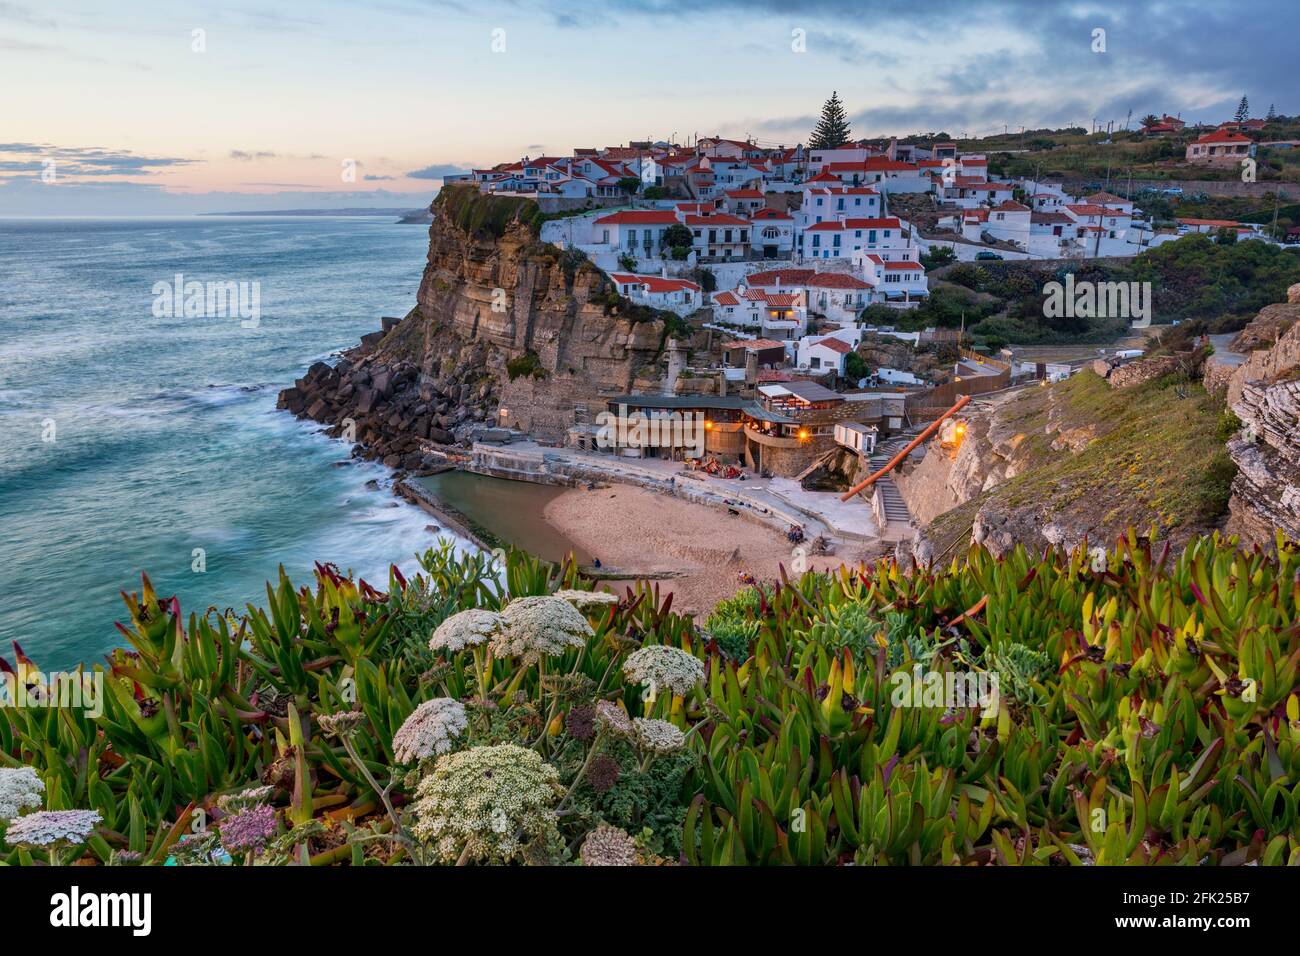 Azenhas do Mar è una città balneare del comune di Sintra, in Portogallo. Vicino a Lisboa. Azenhas do Mar villaggio bianco, scogliera e oceano, Sintra, Porto Foto Stock